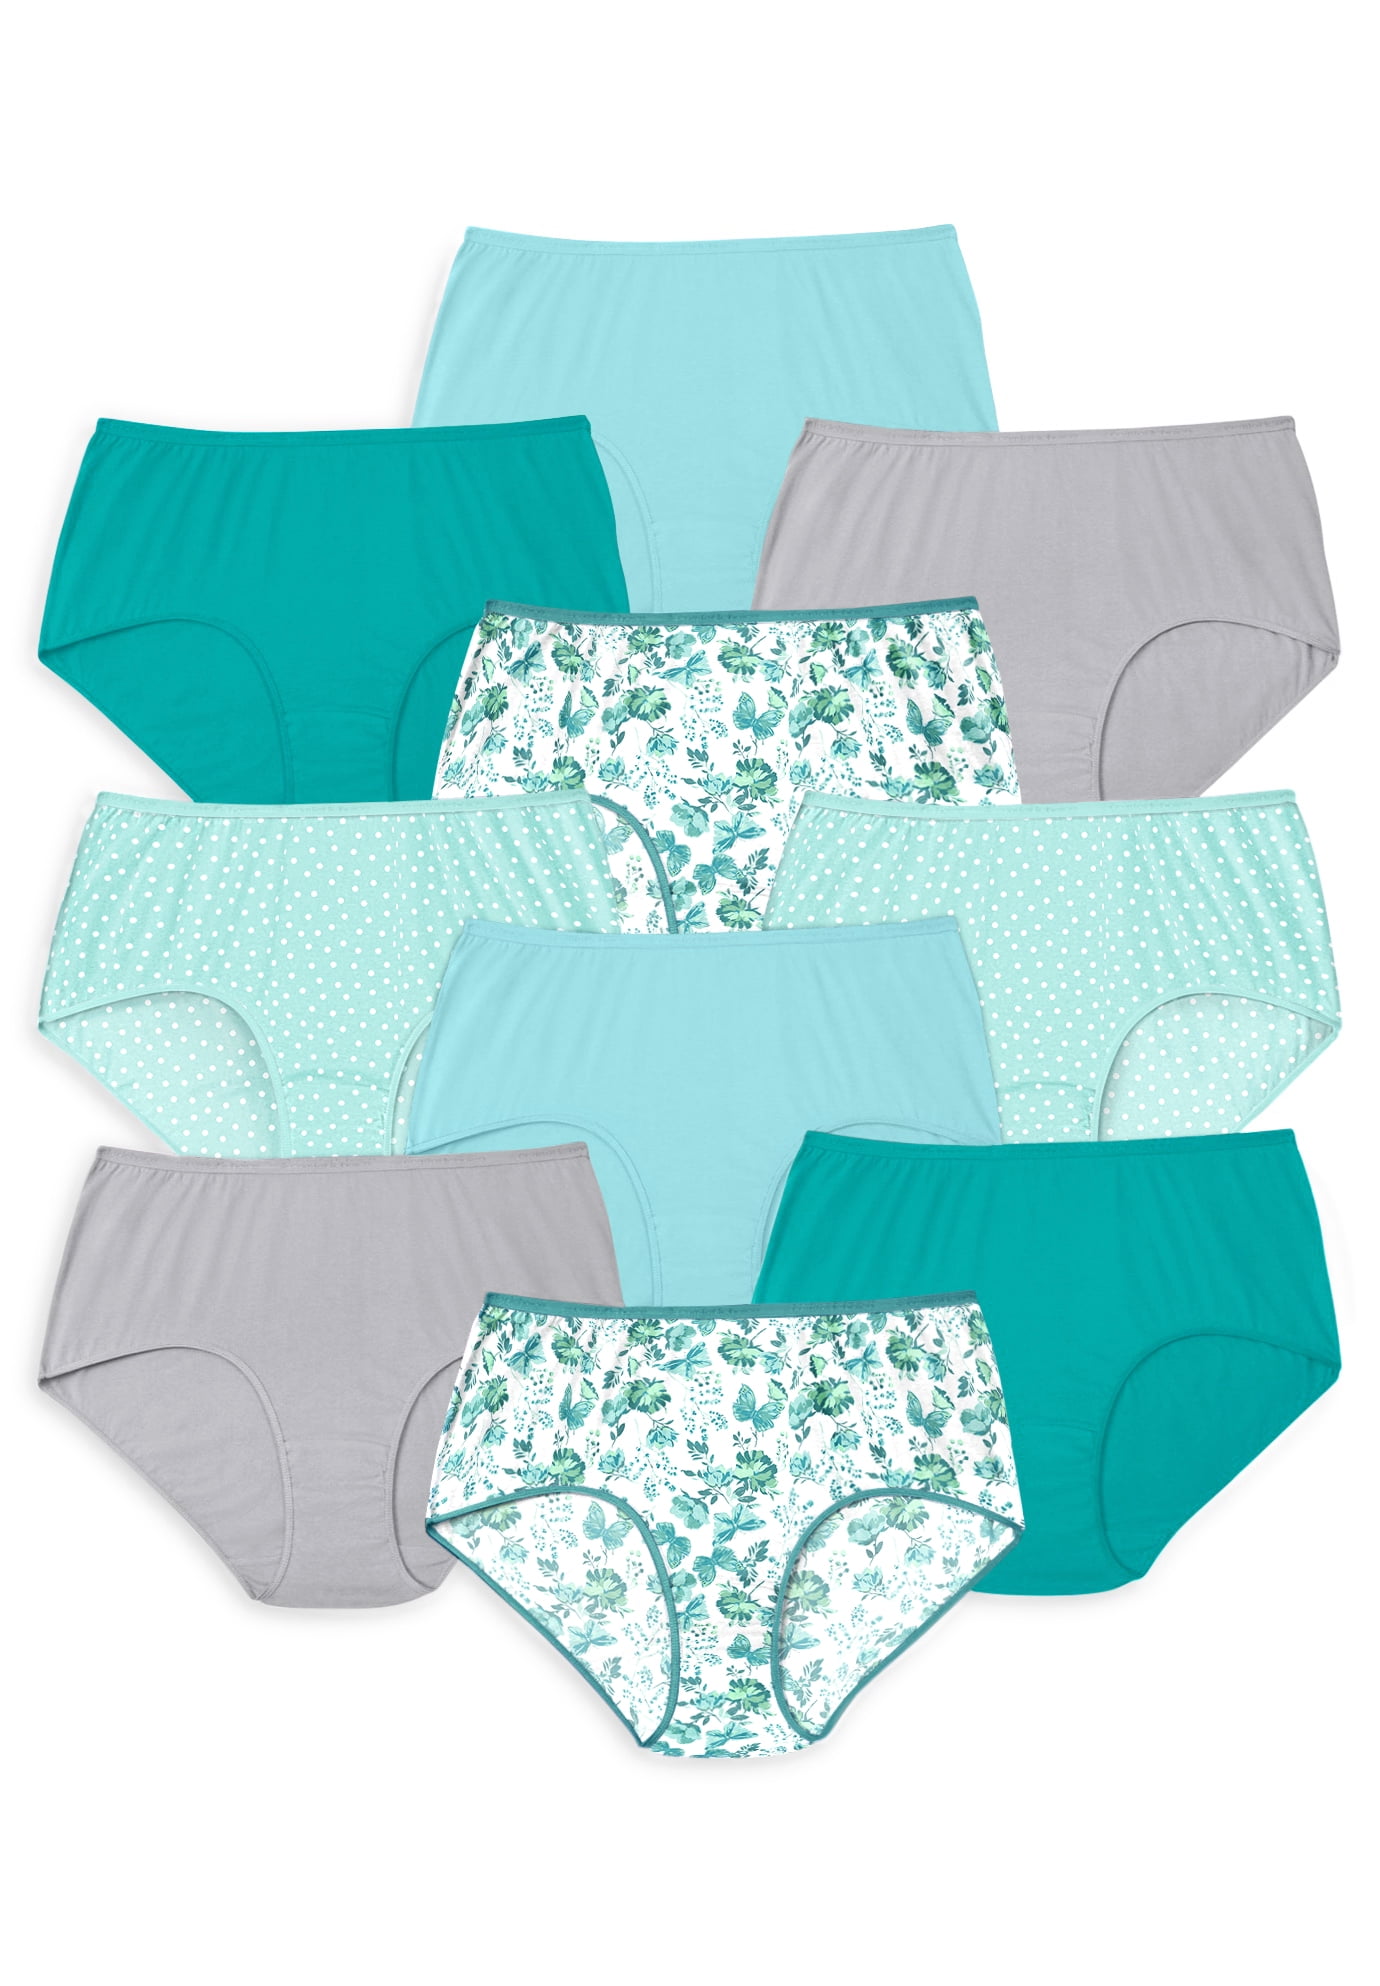  Comfort Choice Womens Plus Size Cotton Brief 10-Pack  Underwear - 13